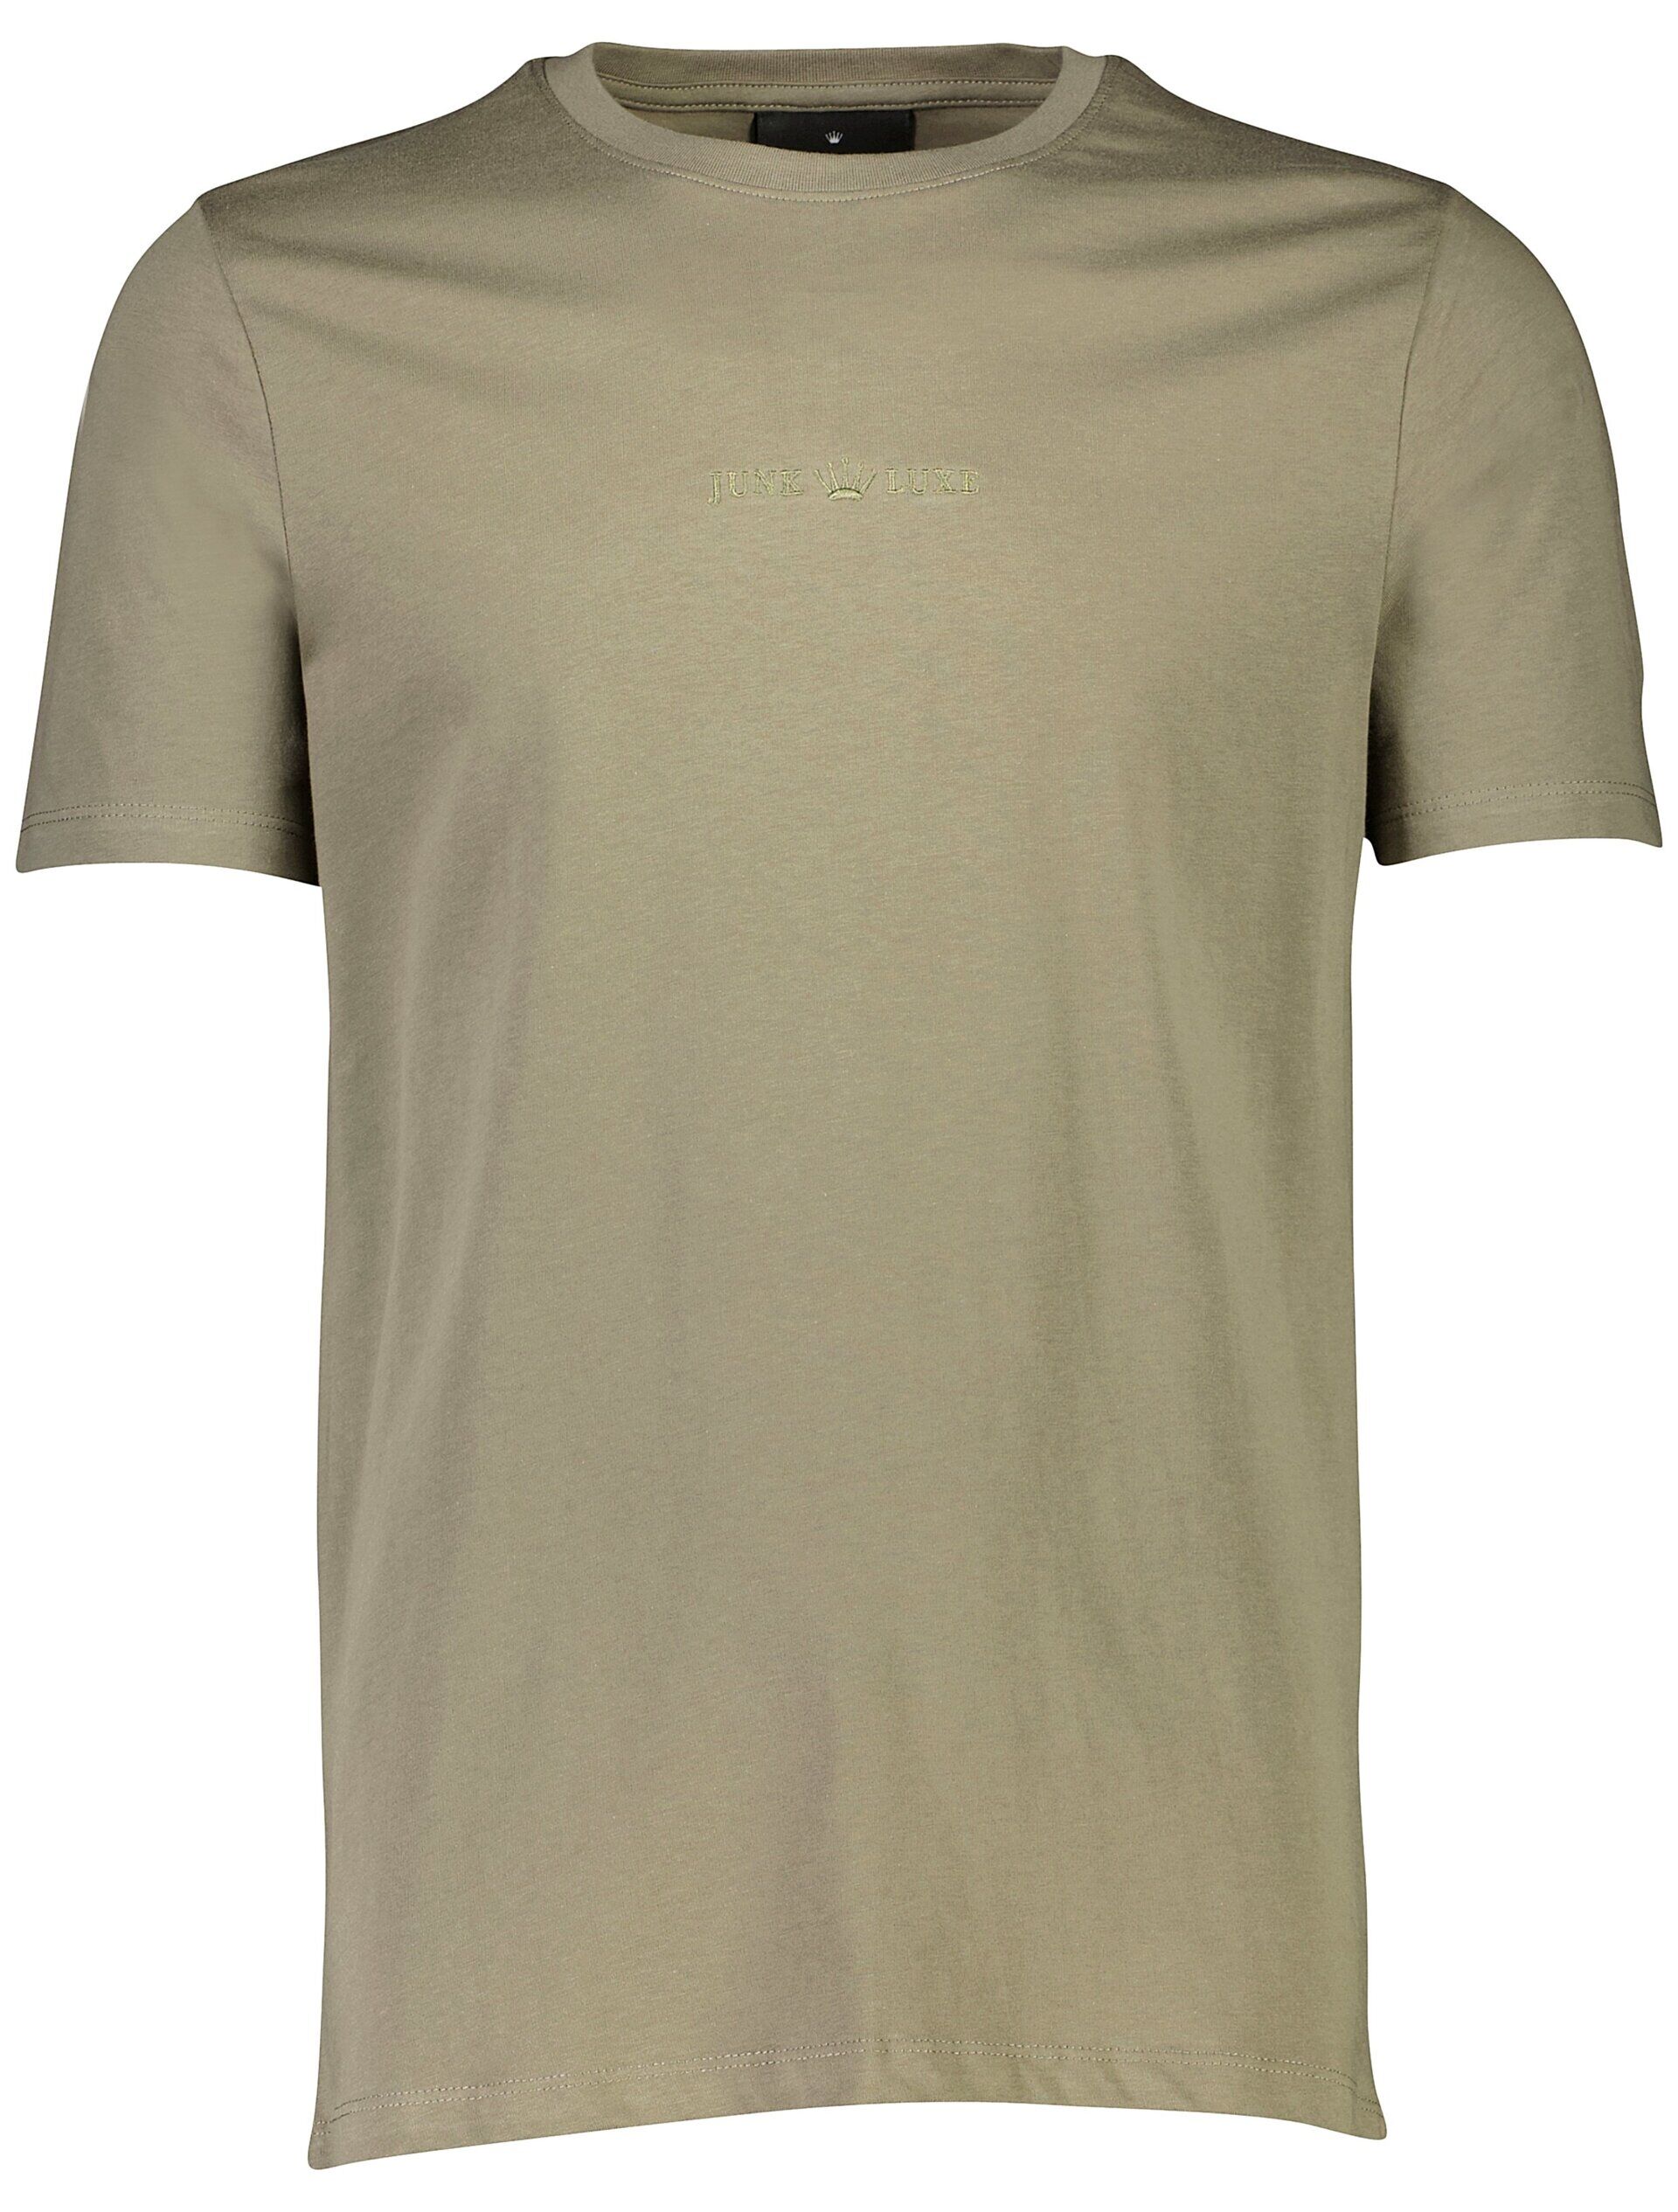 Junk de Luxe  T-shirt Grön 60-452043